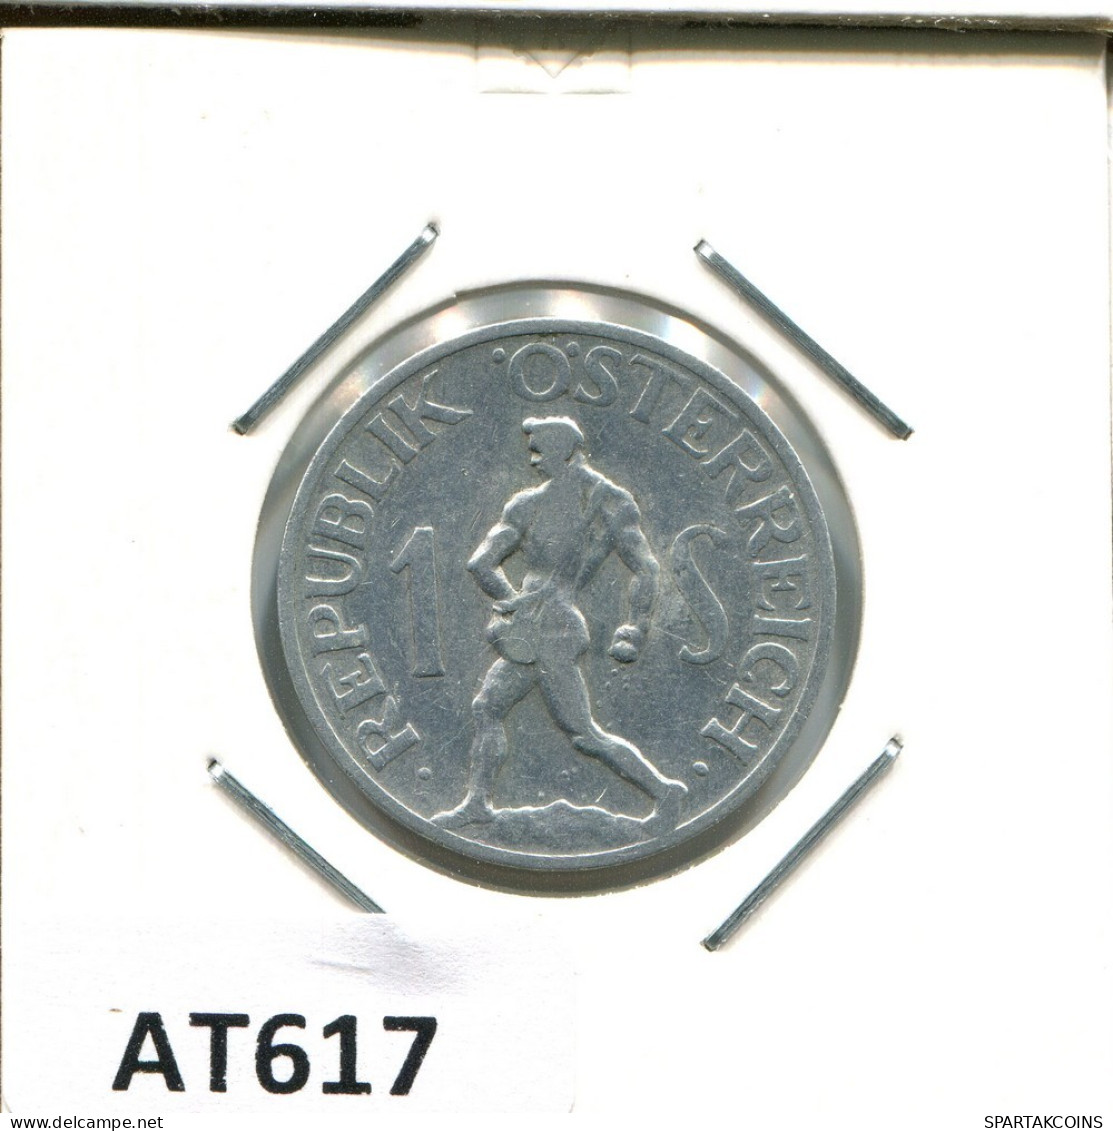 1 SCHILLING 1946 AUSTRIA Moneda #AT617.E.A - Autriche